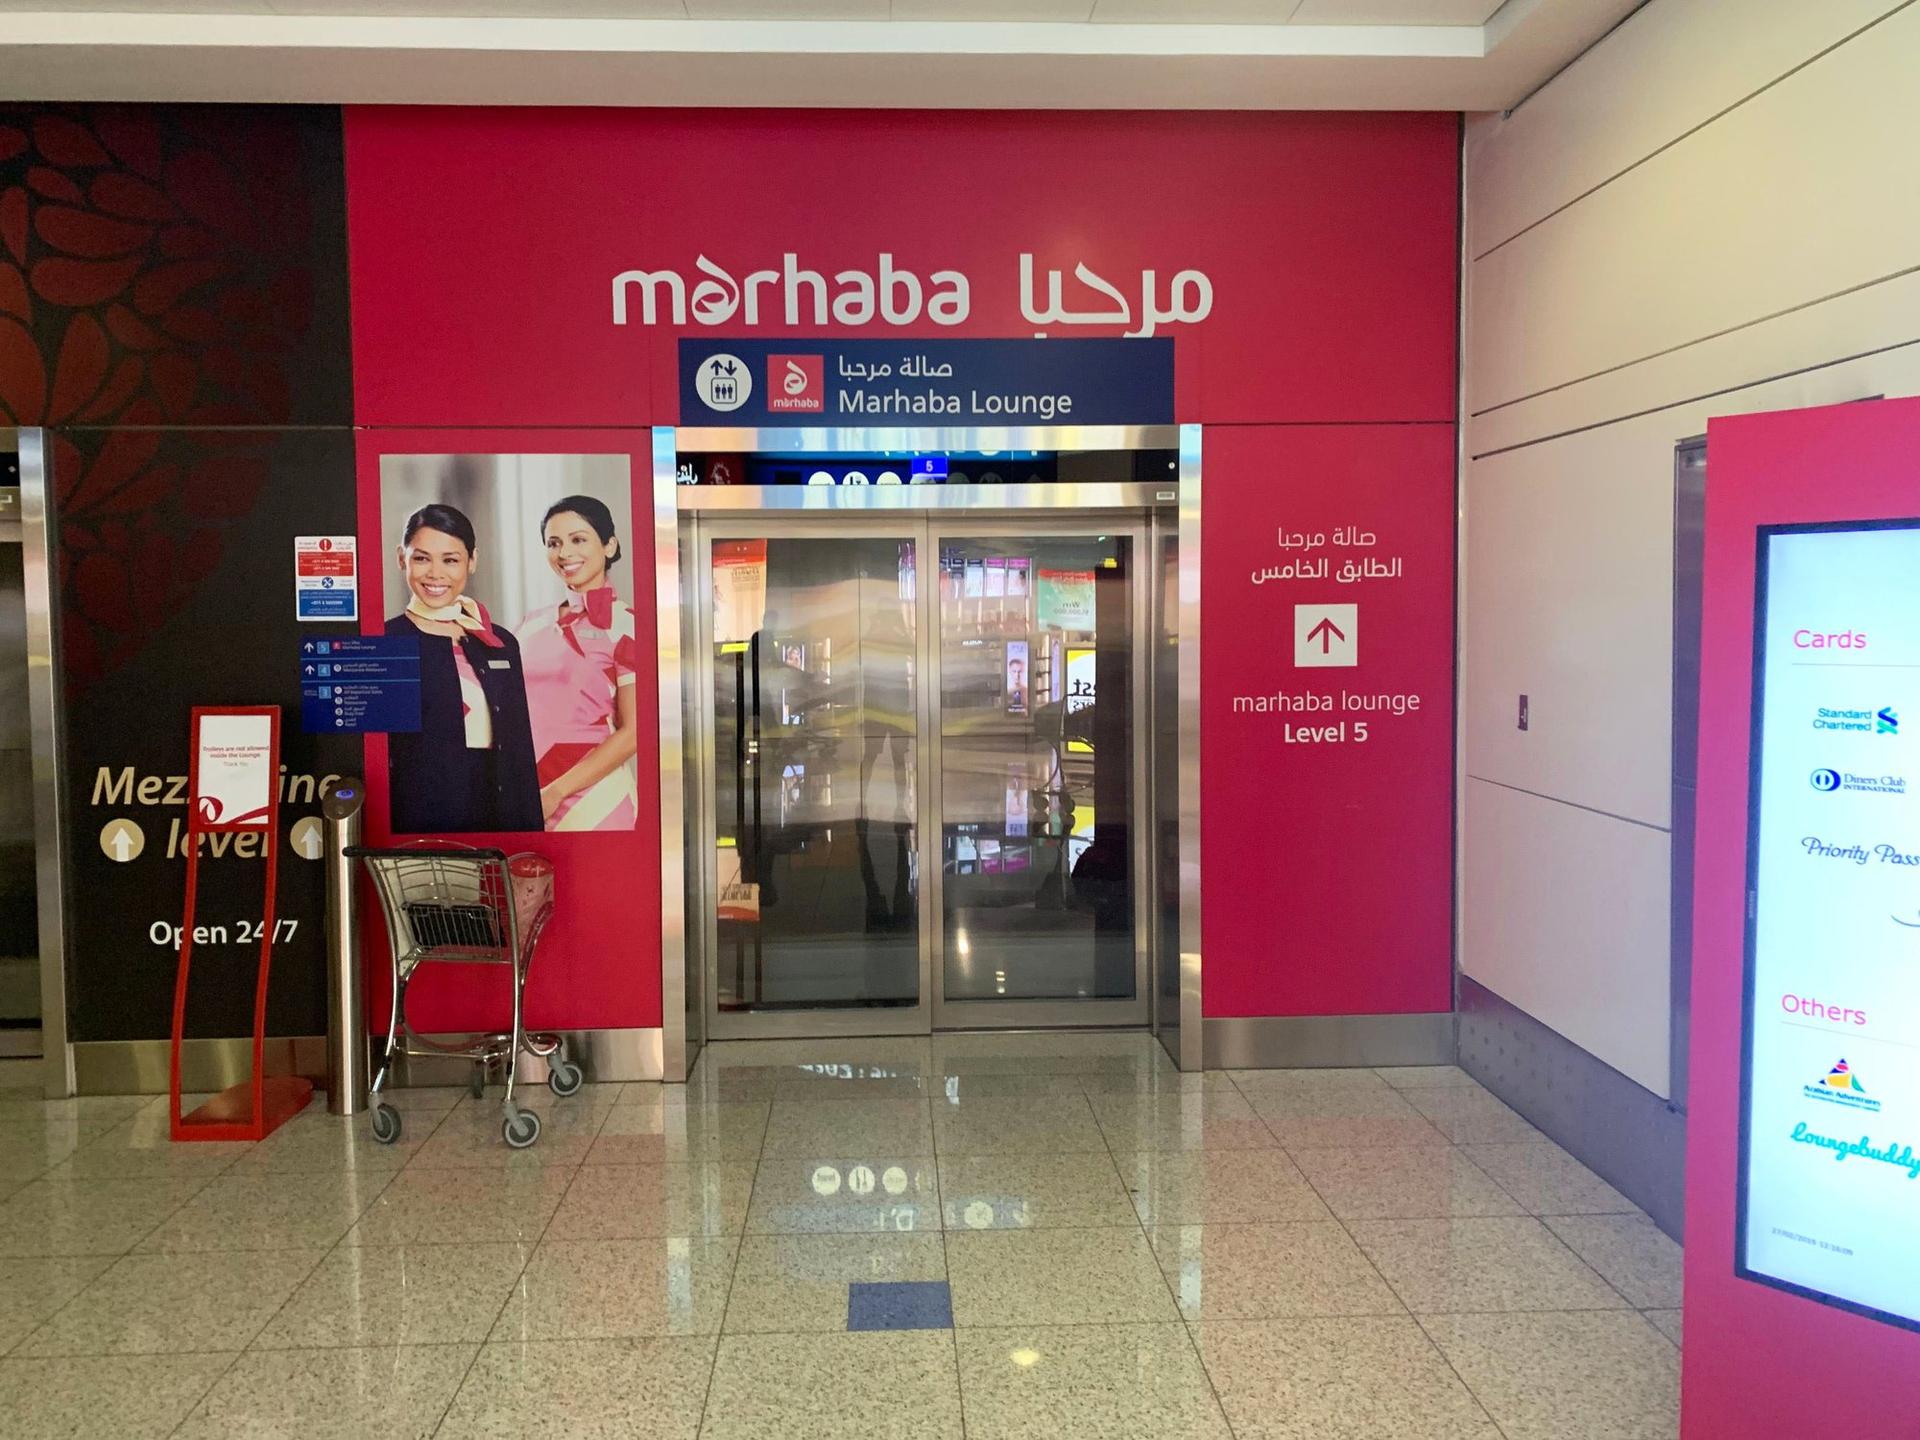 Marhaba Lounge image 5 of 40